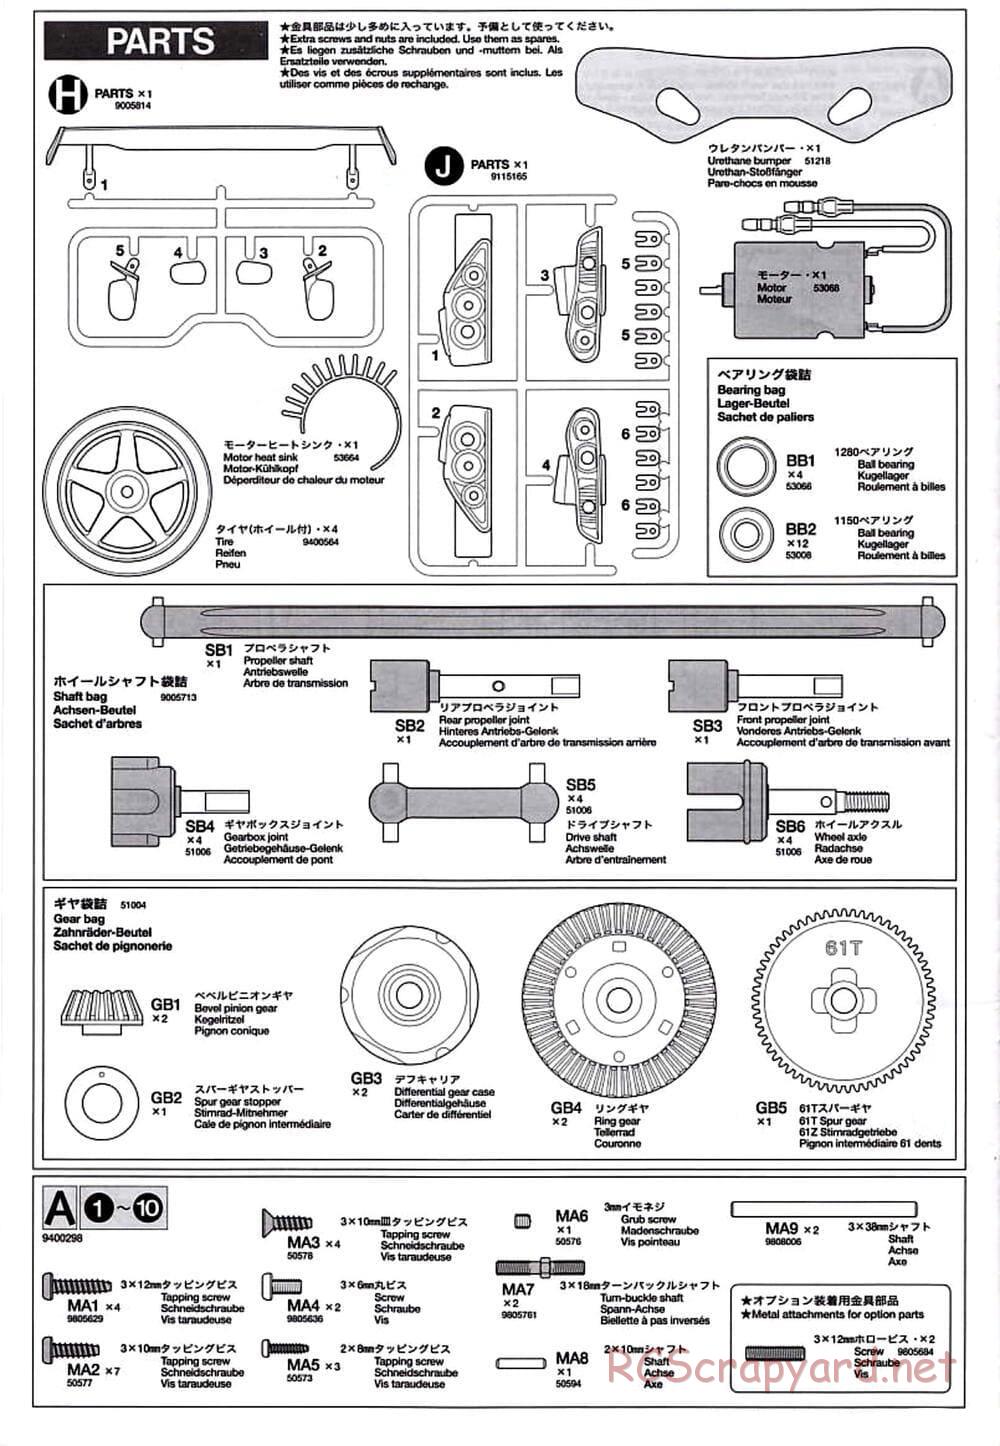 Tamiya - TT-01D Chassis - Manual - Page 22